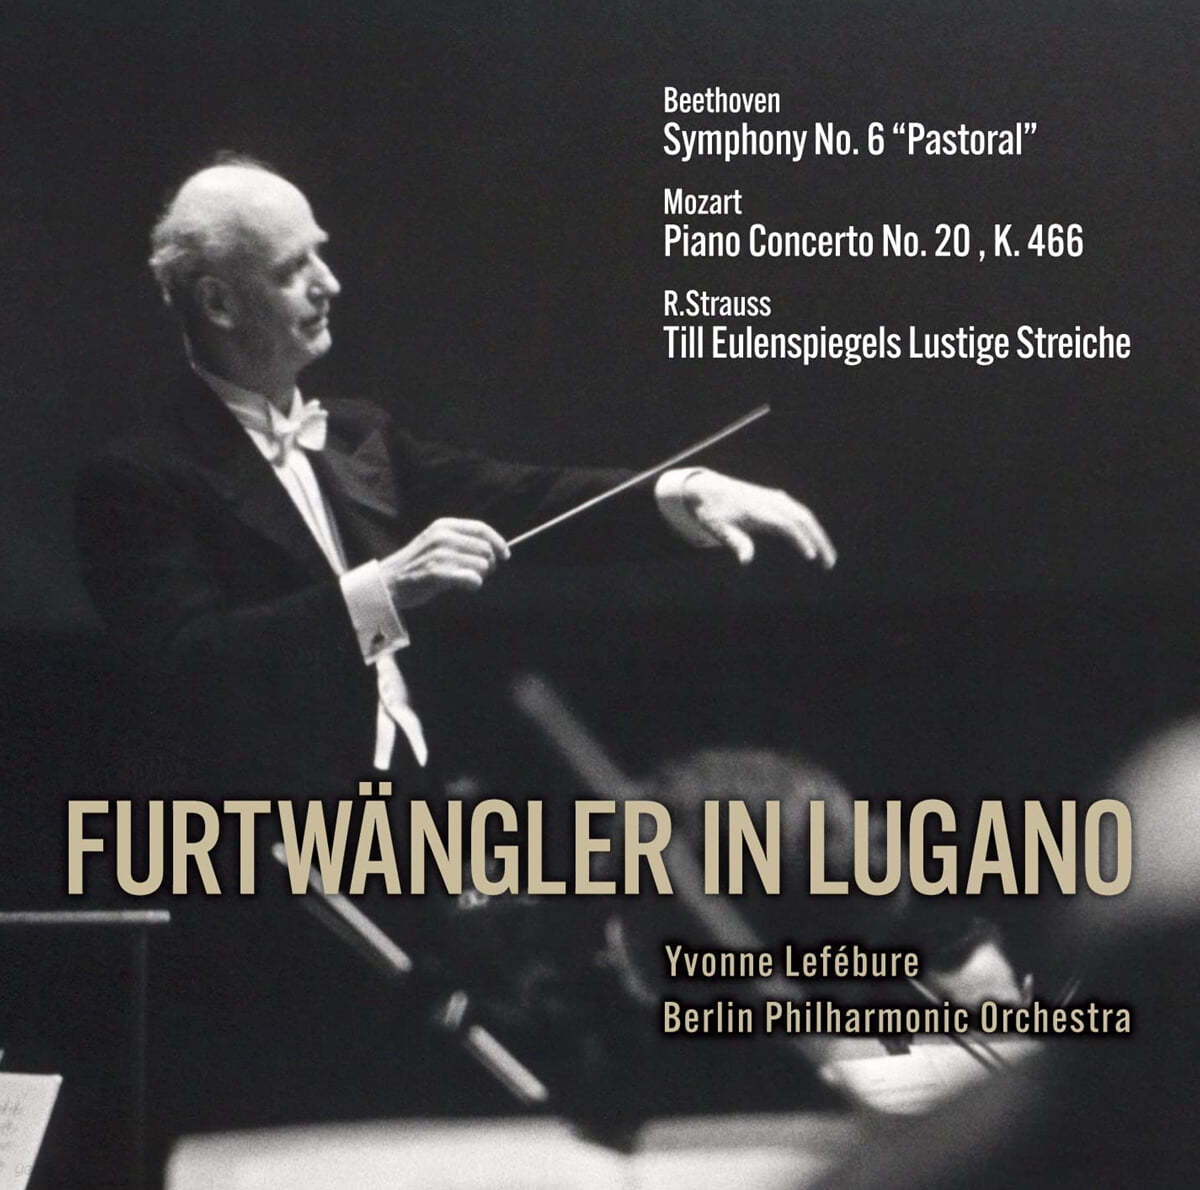 Wilhelm Furtwangler 빌헬름 푸르트벵글러 - 1954년 루가노 공연 실황 전곡집 (in Lugano) 